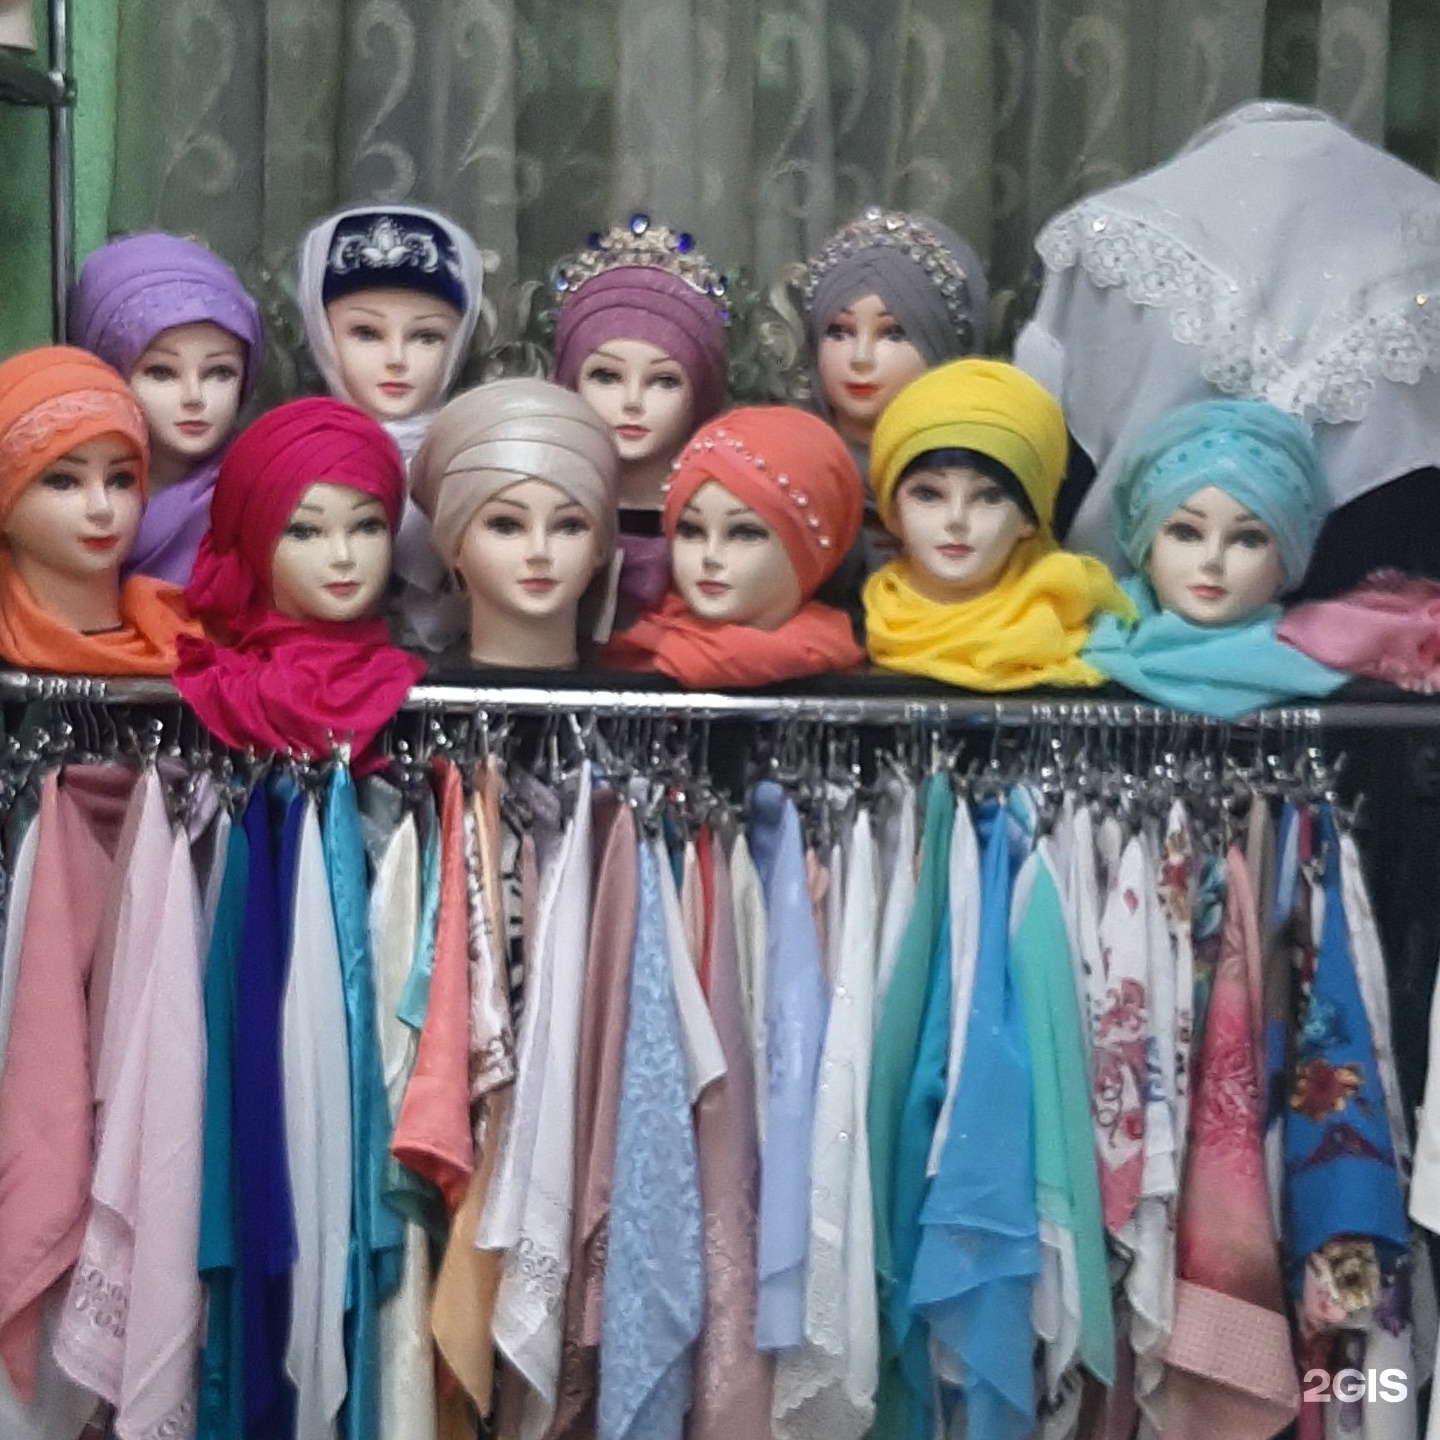 Магазин Мусульманской Одежды Челны